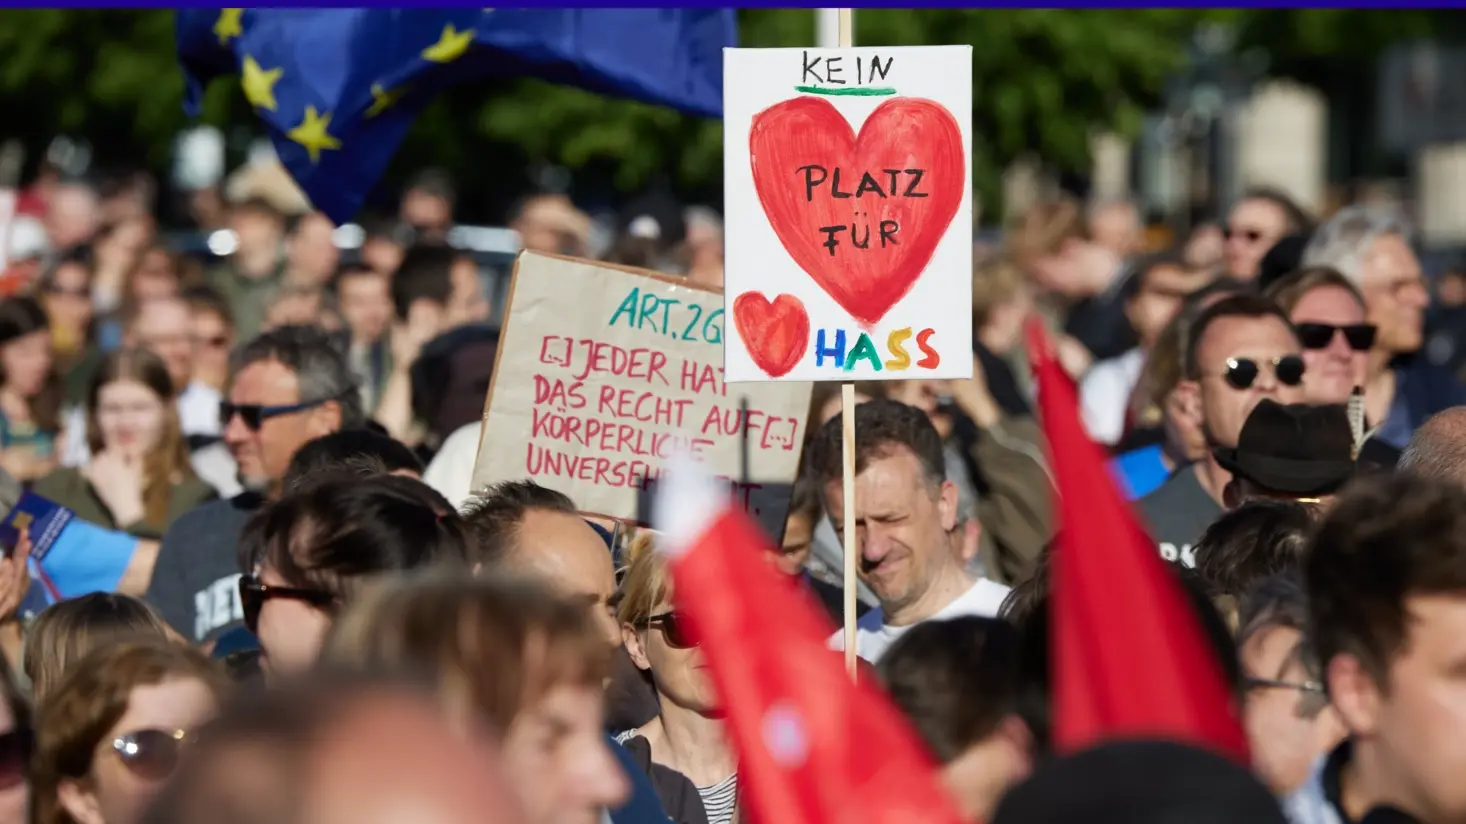 Schild mit "Kein Platz für Hass" auf einer Demo in Berlin